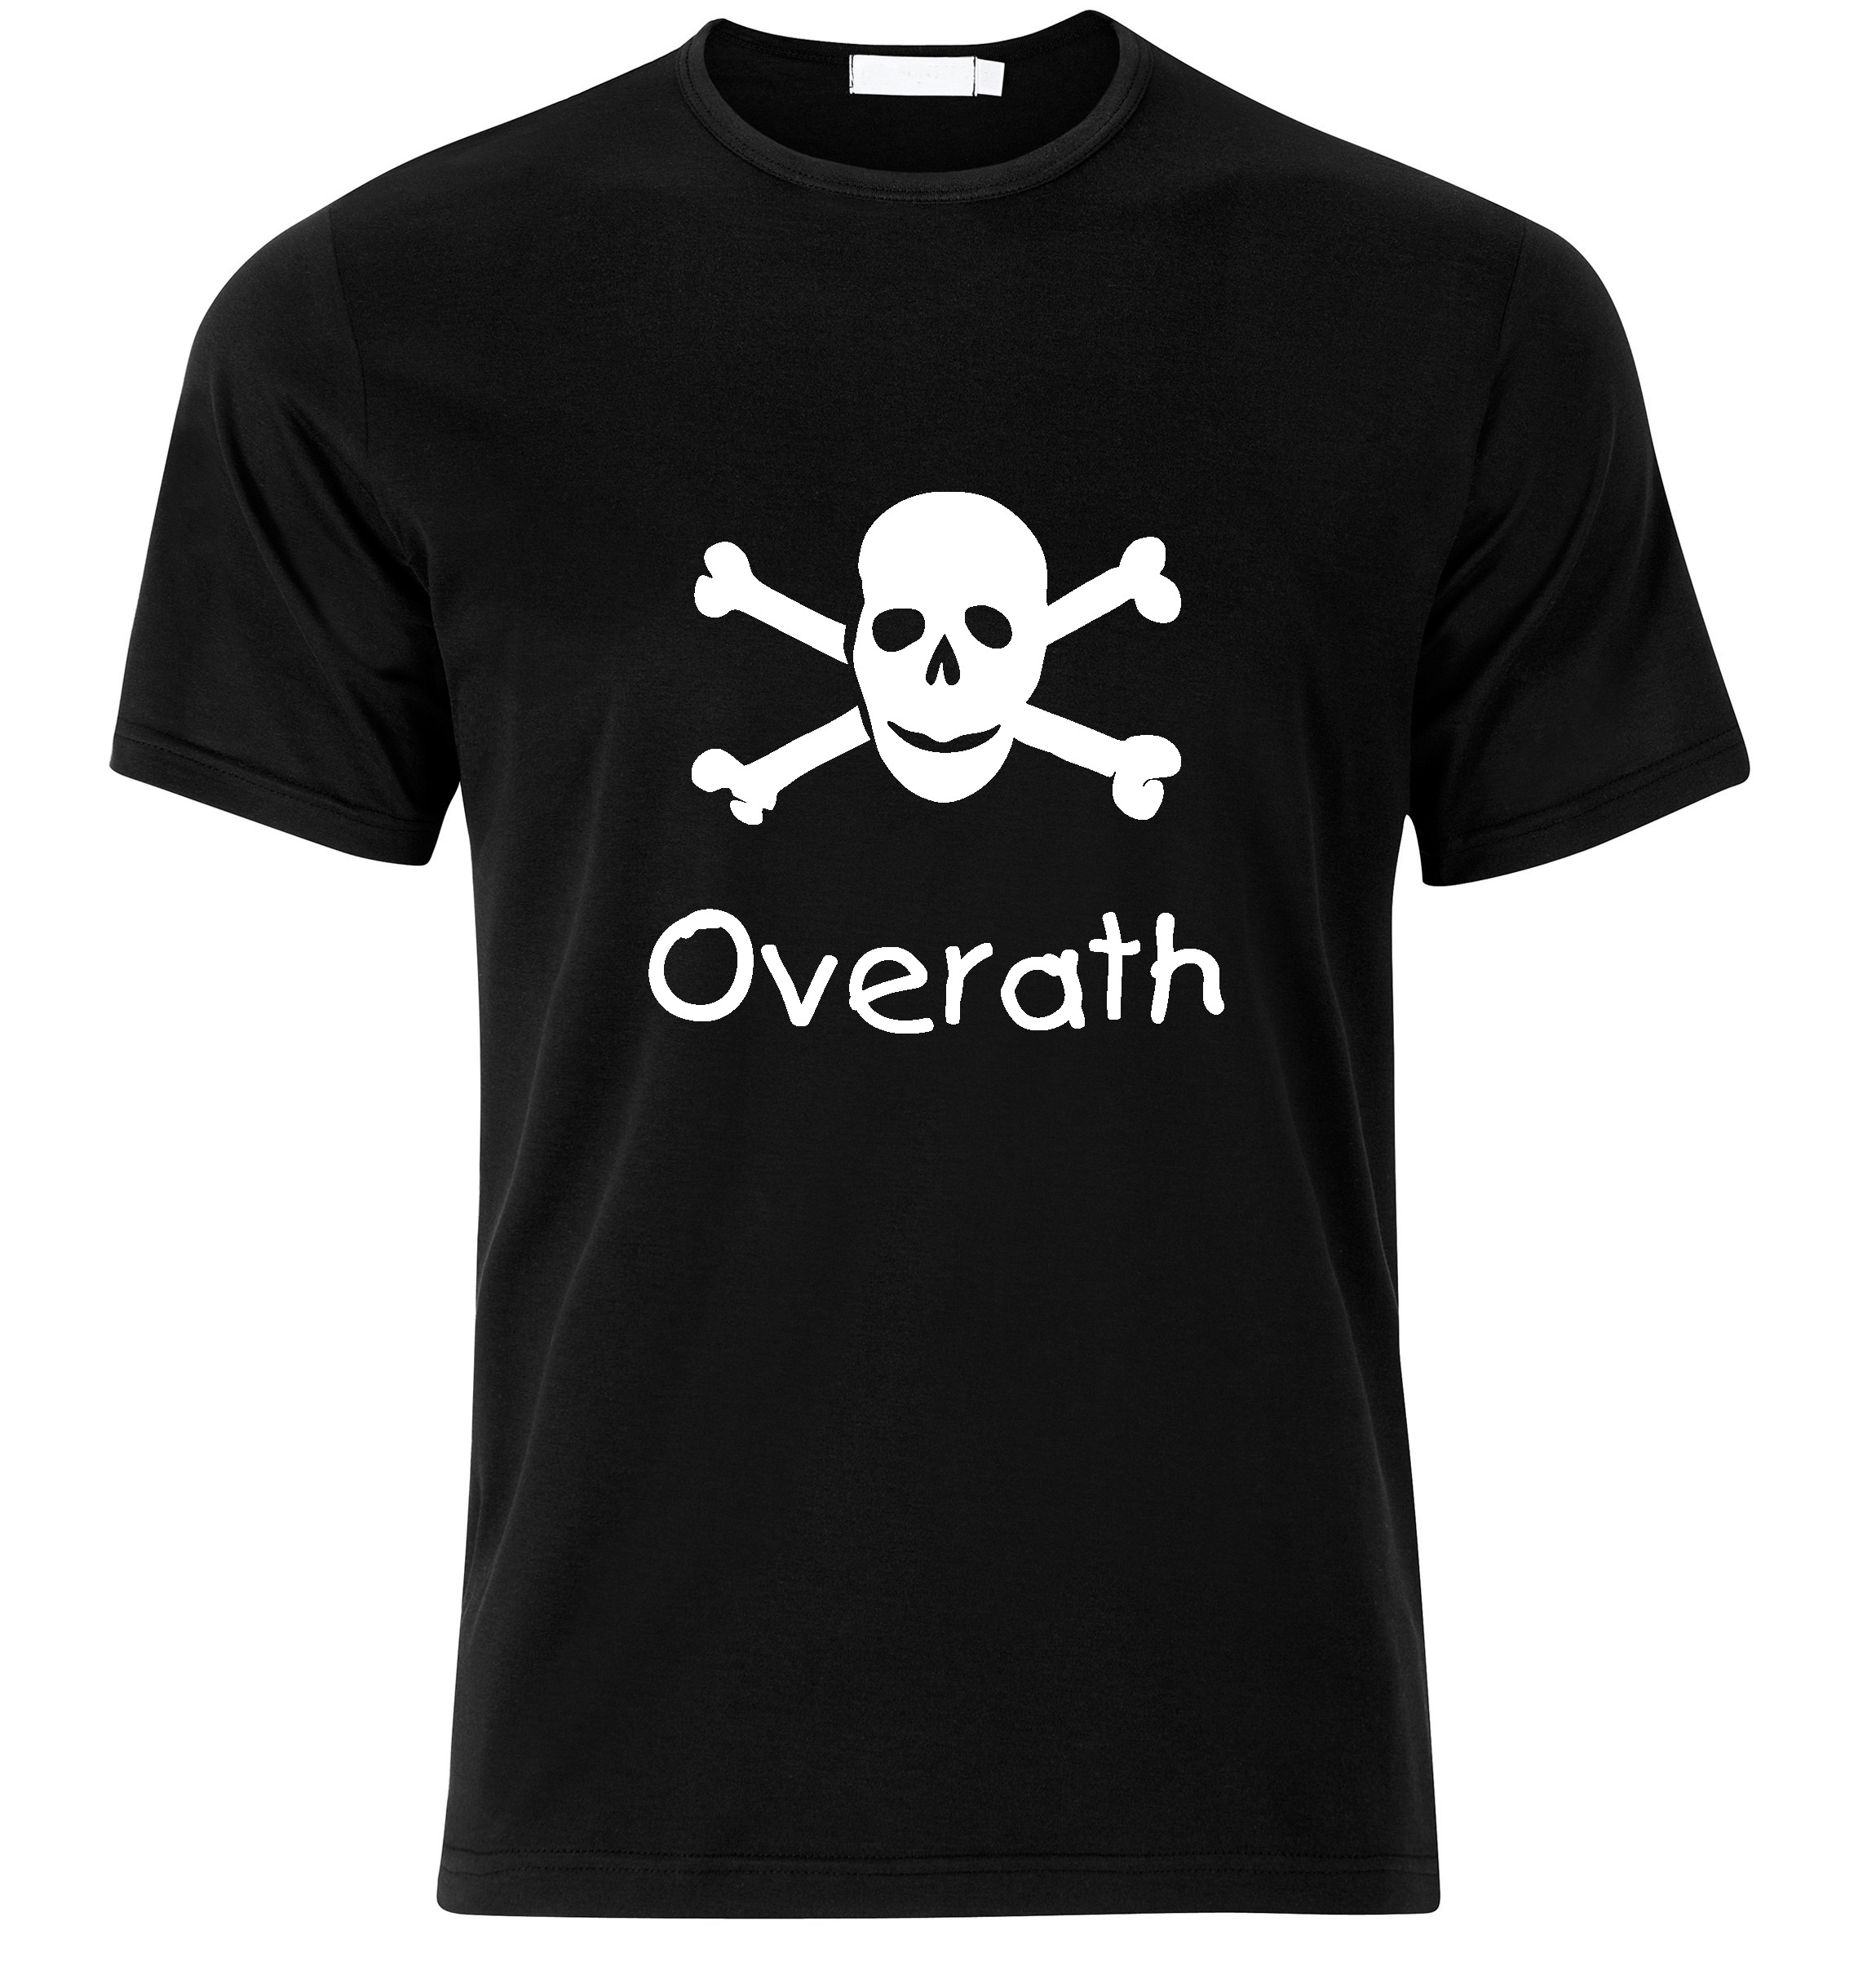 T-Shirt Overath Jolly Roger, Totenkopf